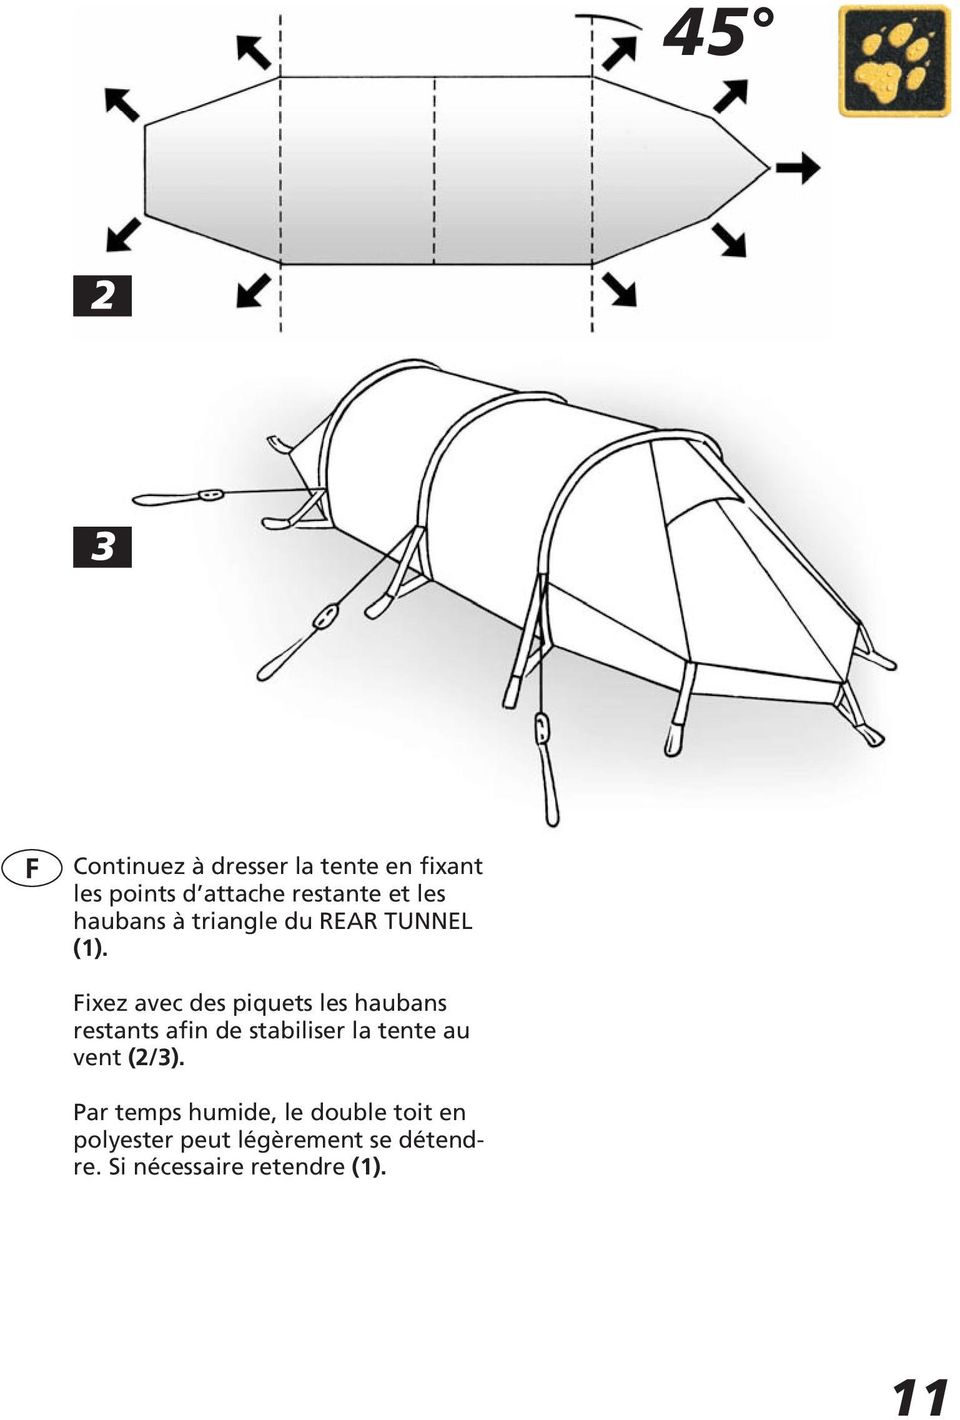 Fixez avec des piquets les haubans restants afin de stabiliser la tente au